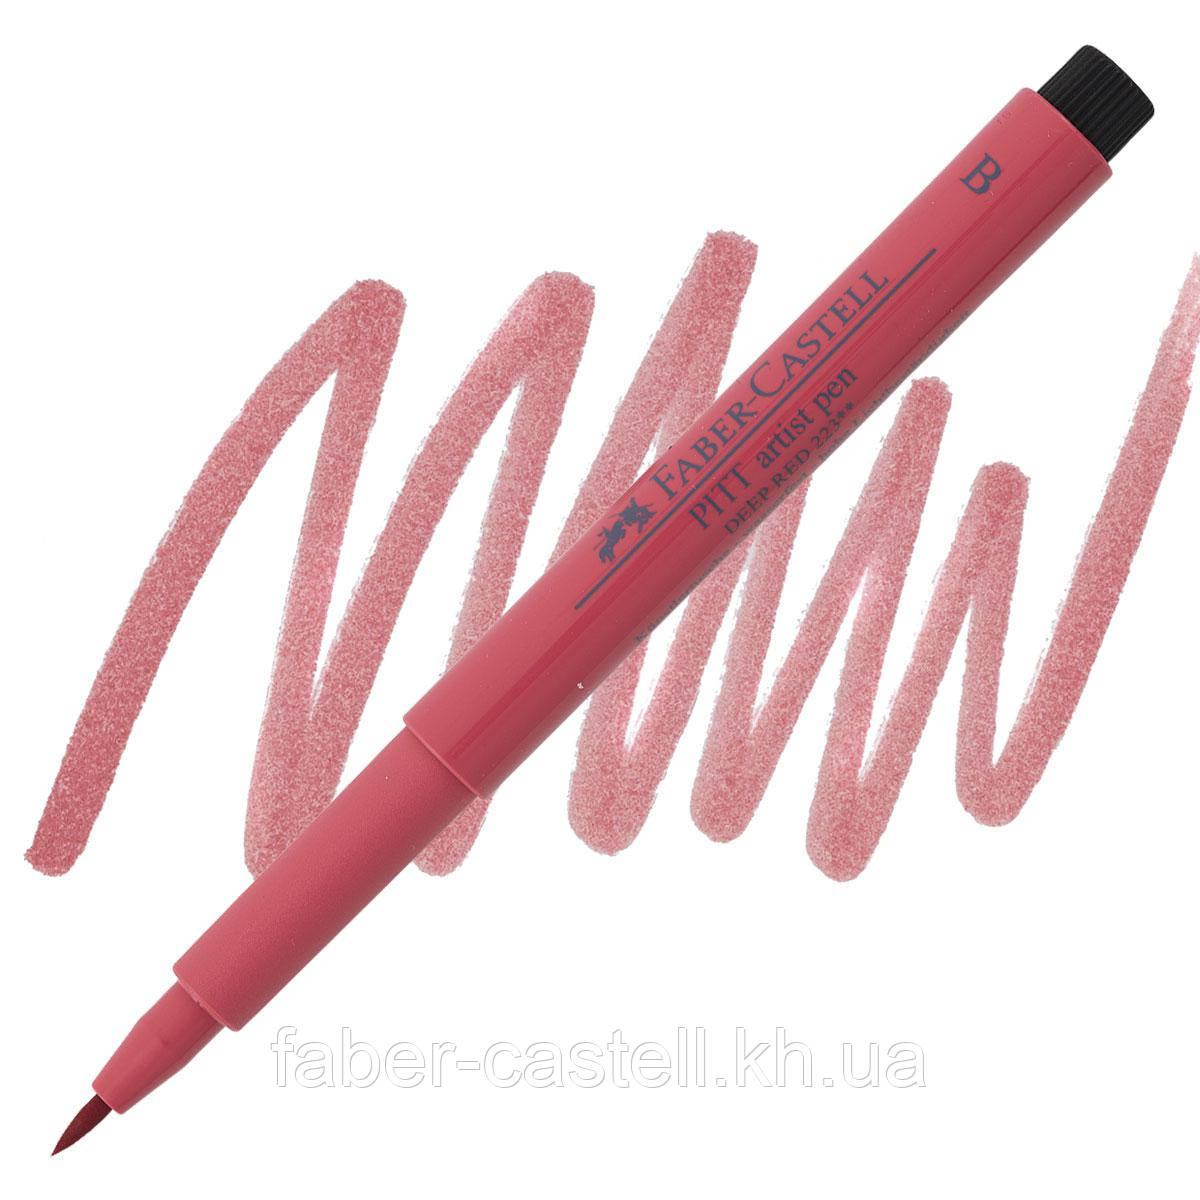 Ручка-пензлик капілярна Faber-Castell Pitt Artist Pen Brush, колір темно-червоний №223, 167523